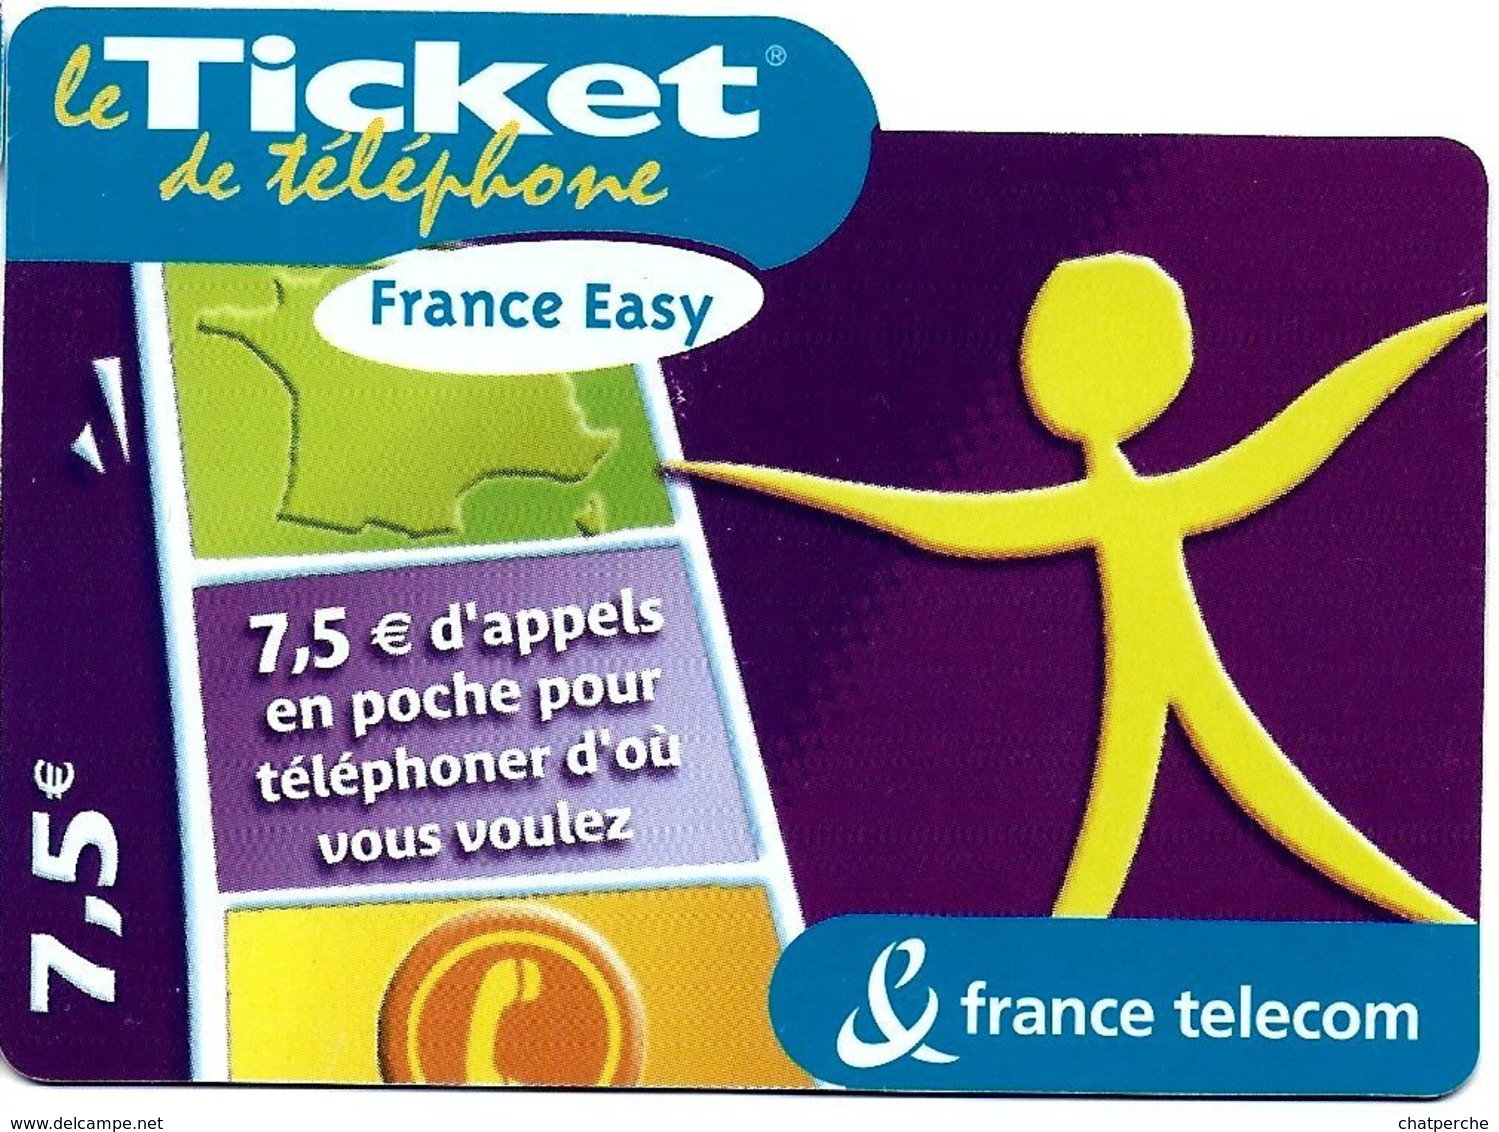 TICKET FRANCE TELECOM FRANCE EASY 7.5 €UROS - Billetes FT